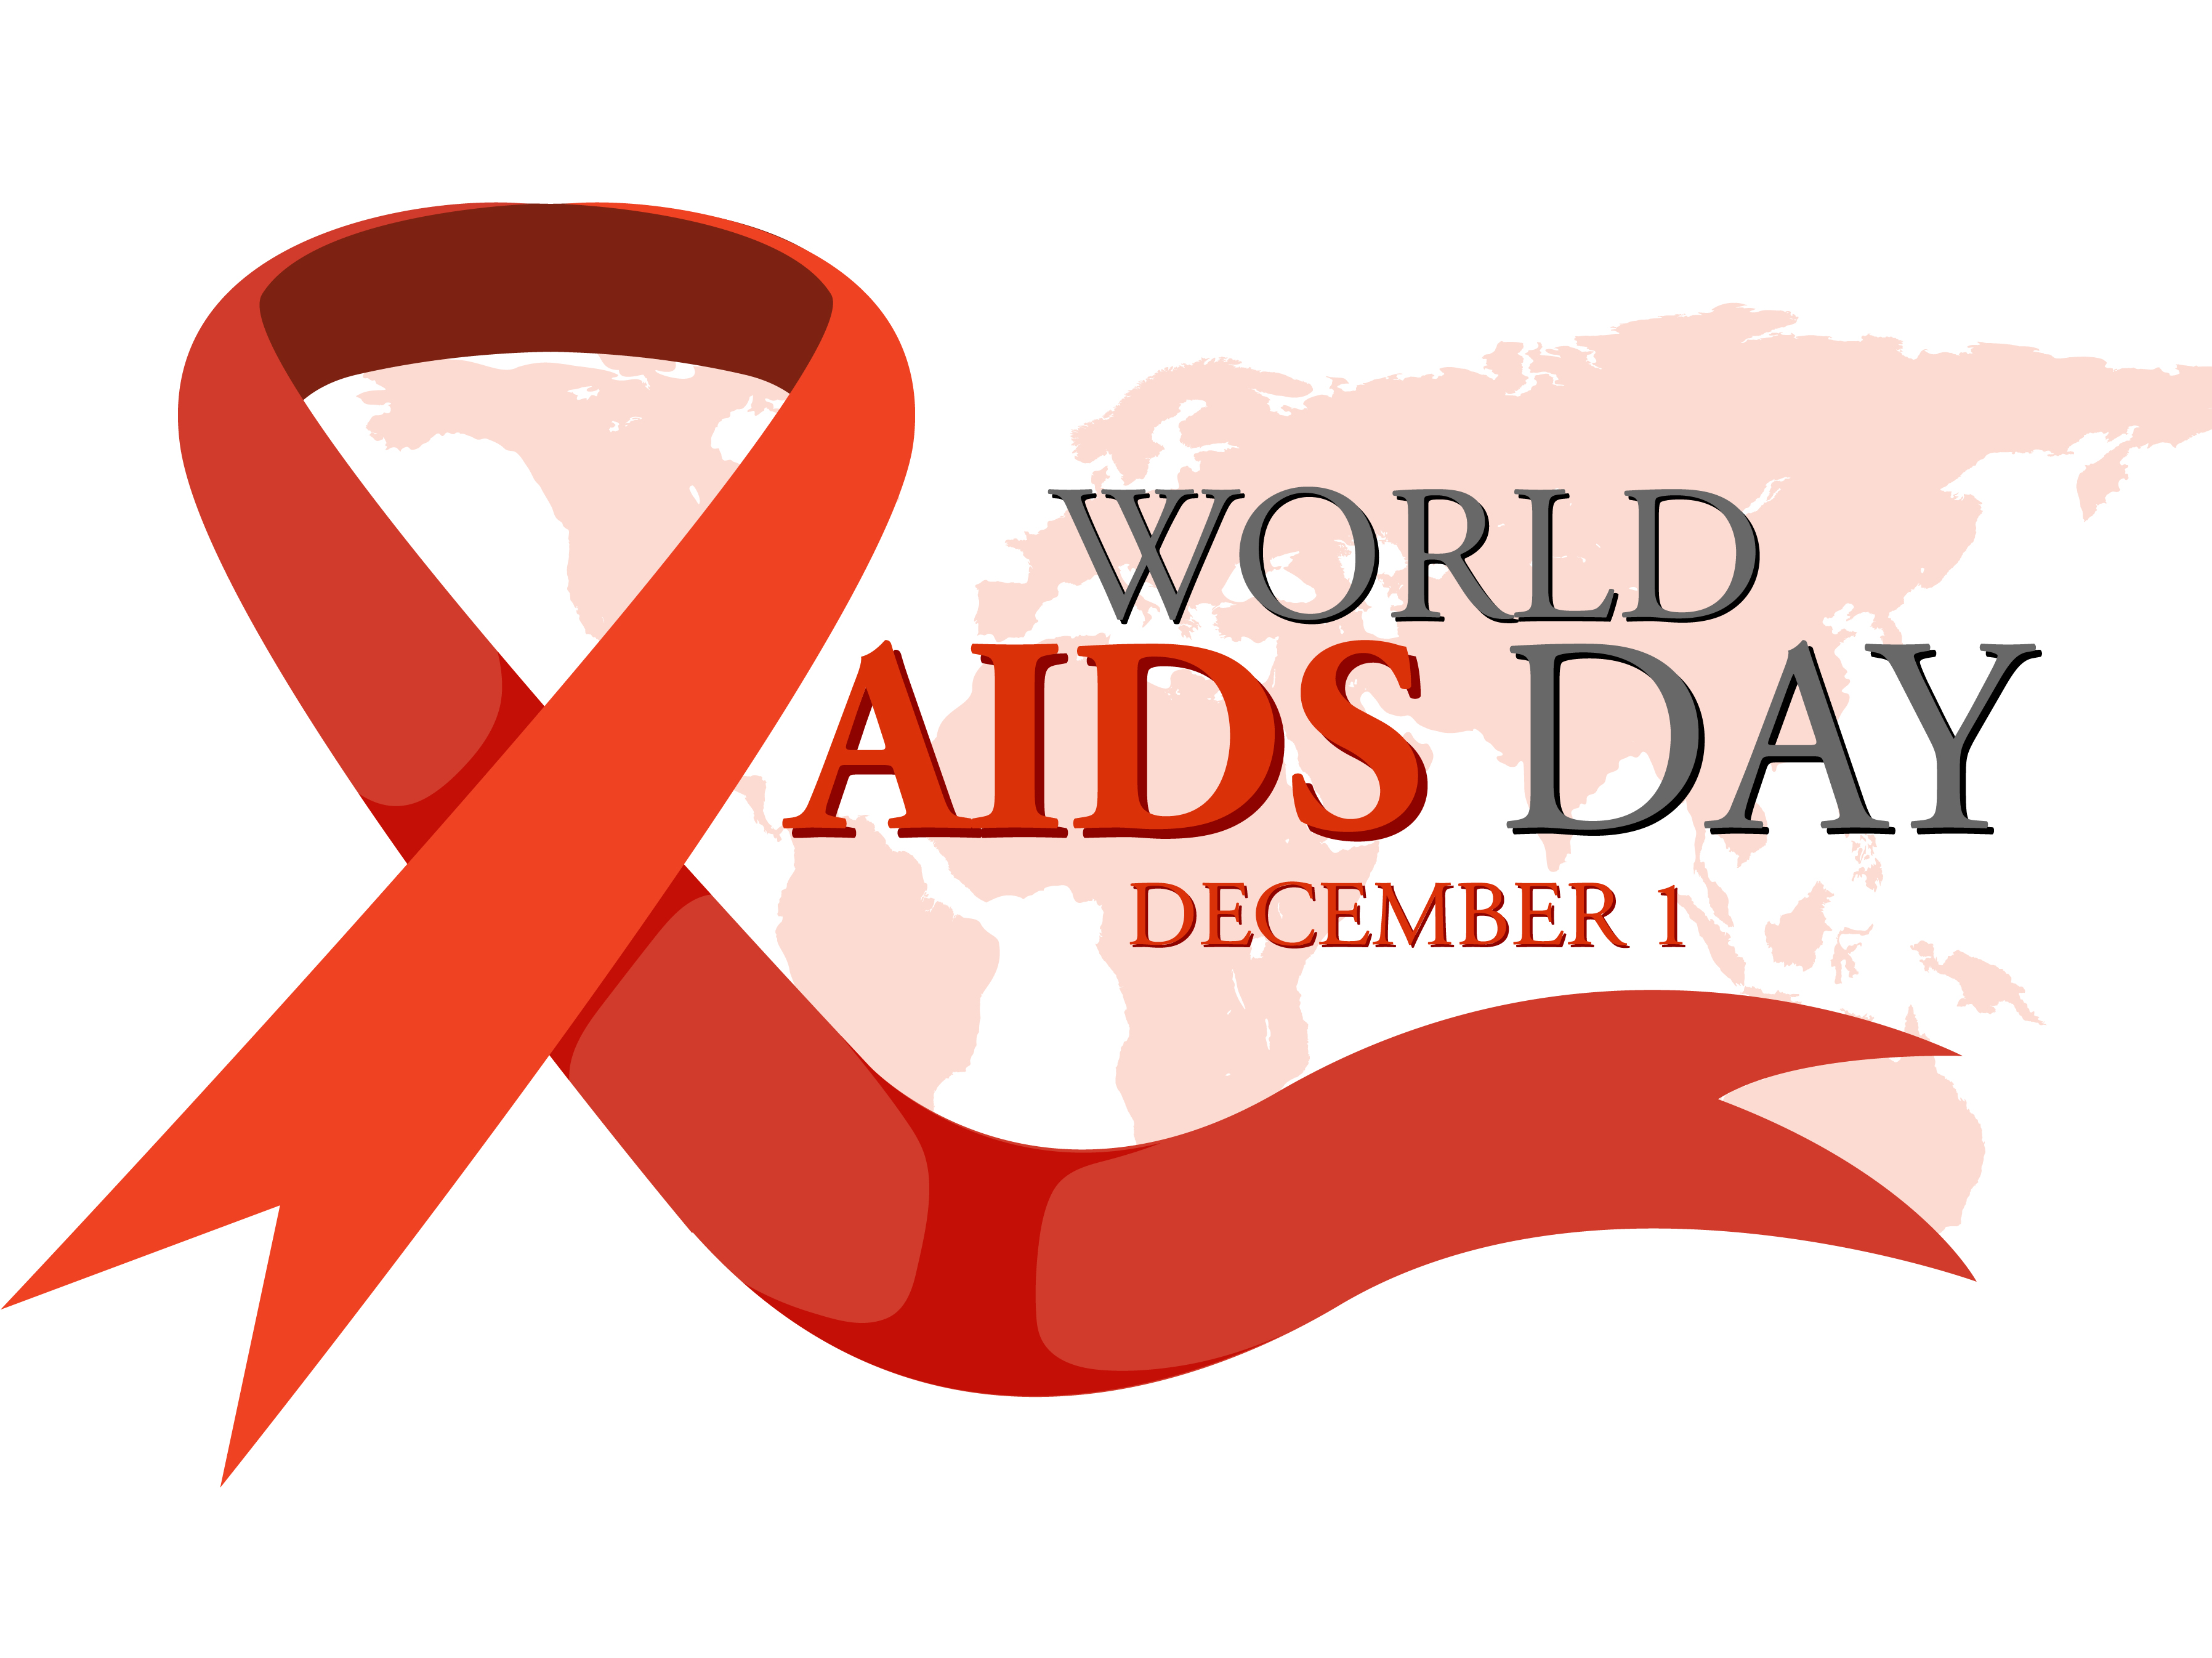 Današnji svetovni dan boja proti aidsu poteka pod geslom "Naj skupnosti vodijo"